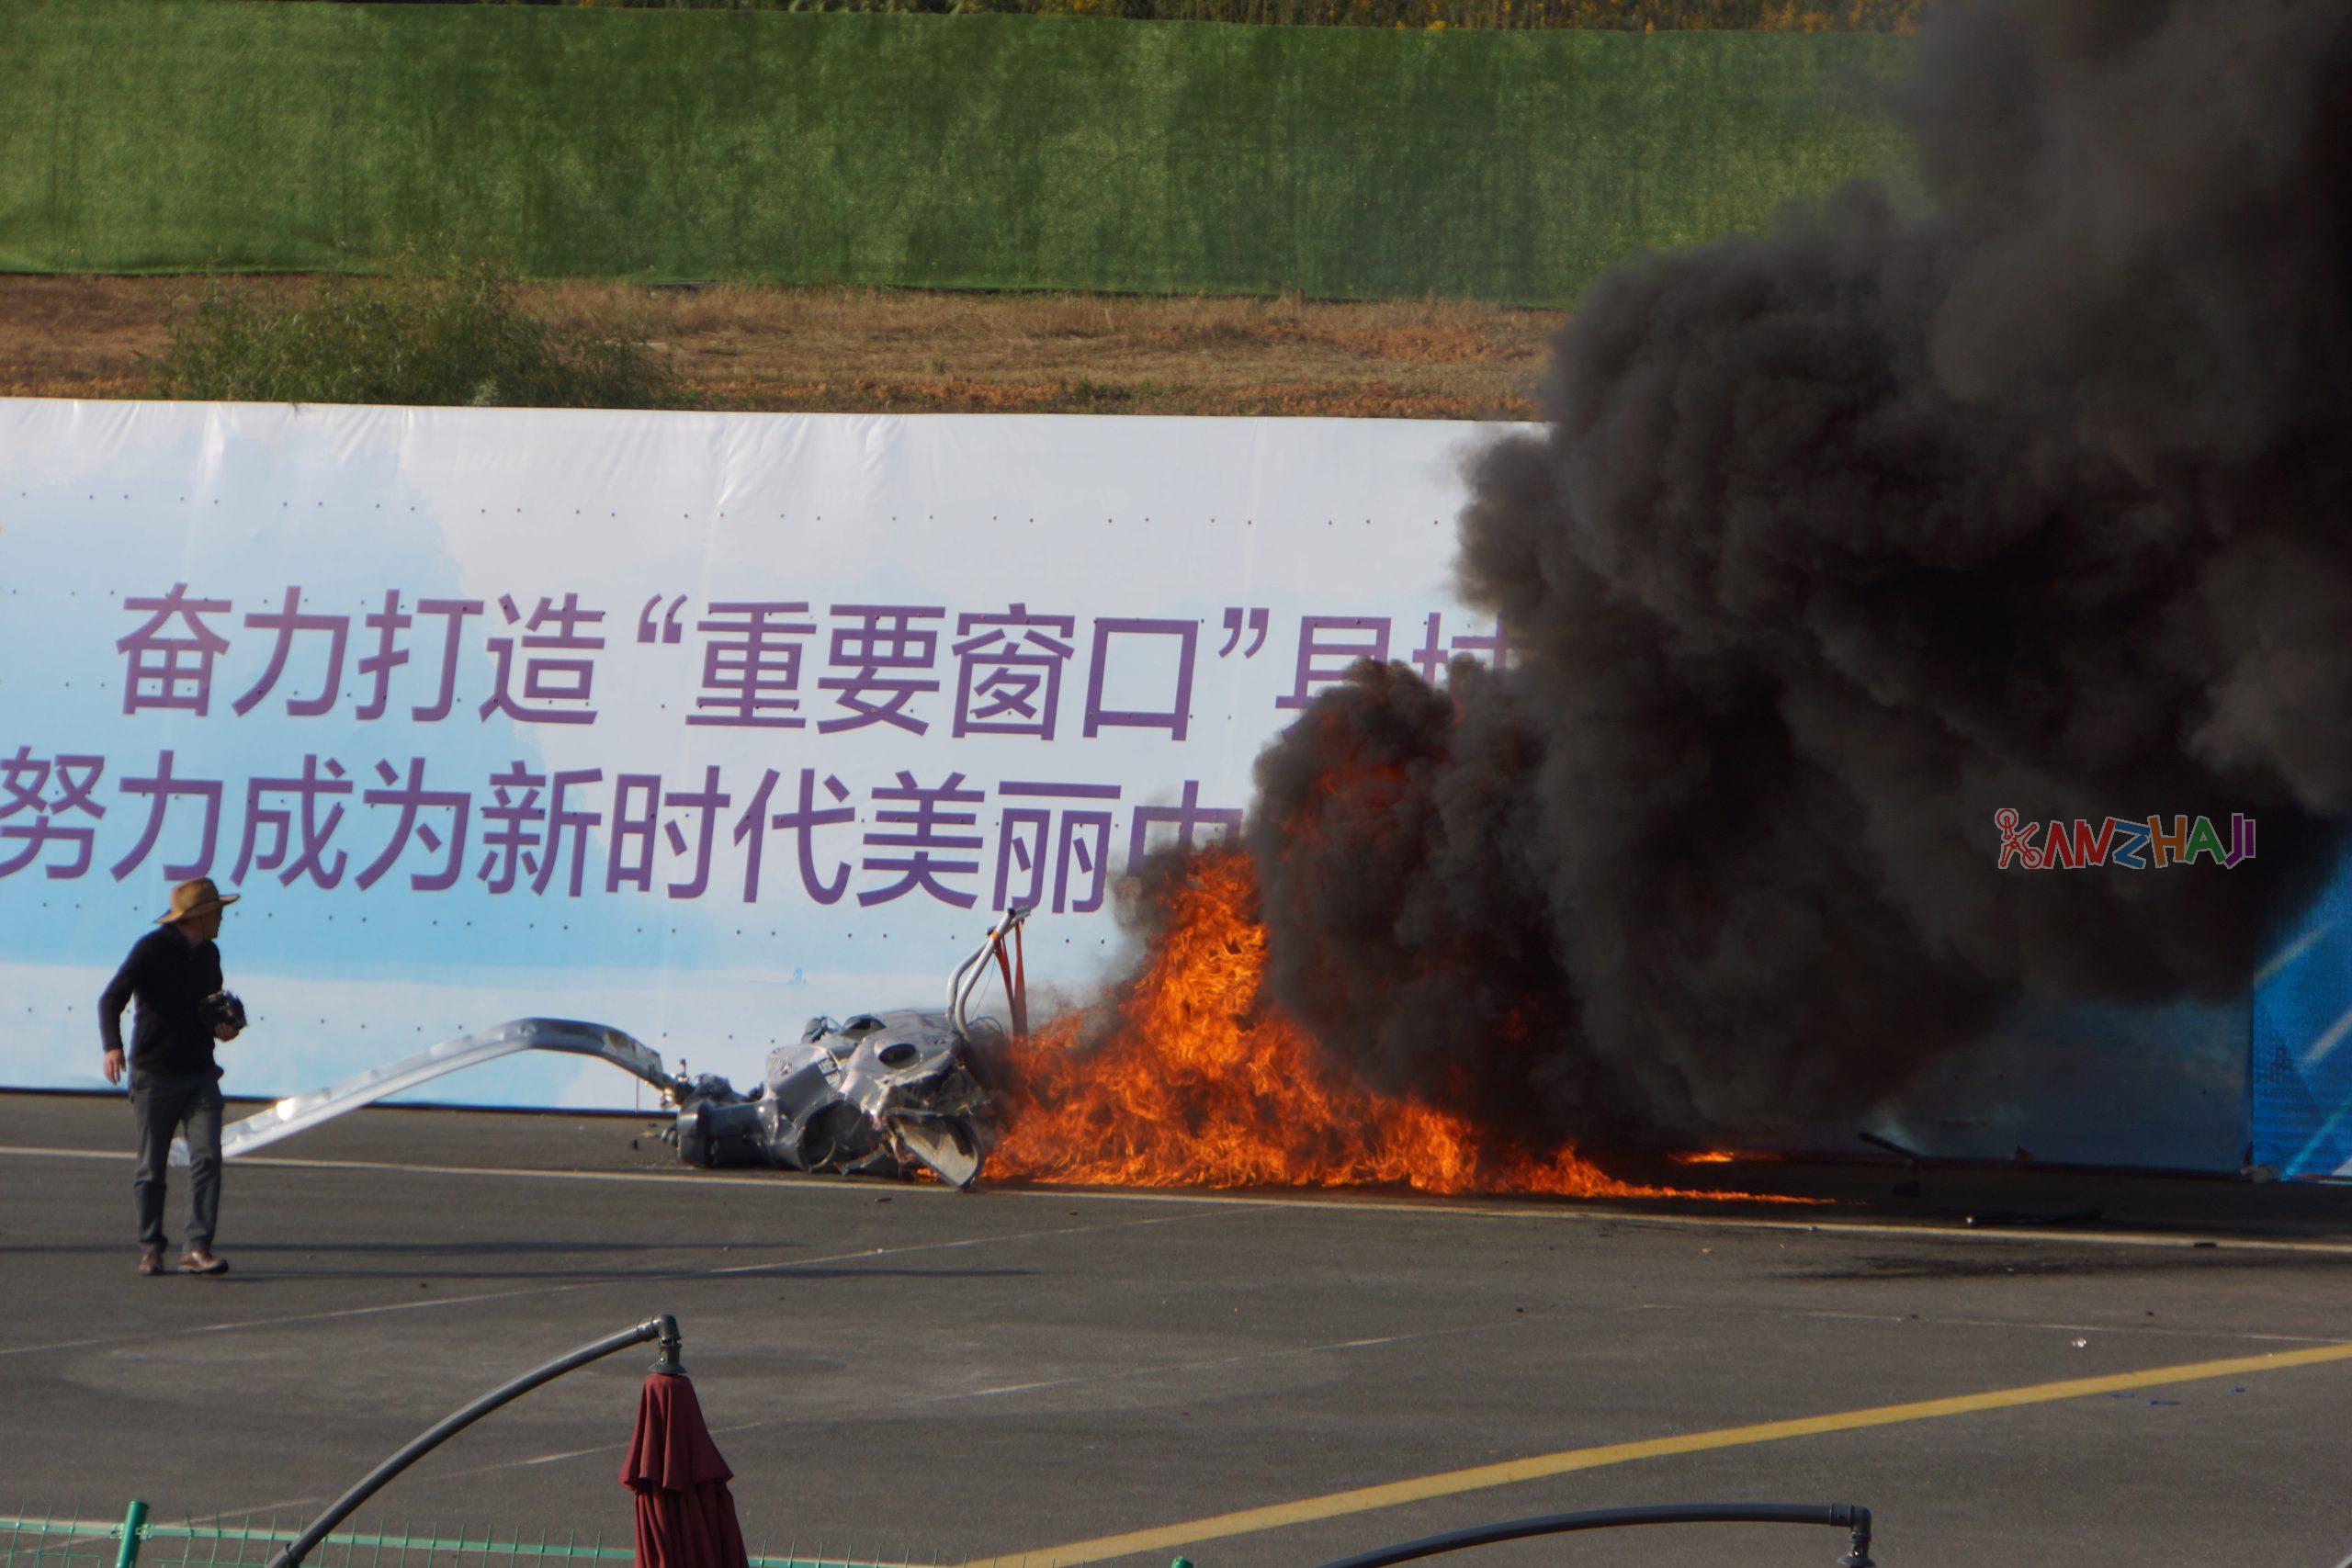 “航空工业杯”第七届国际无人飞行器创新大奖赛现场-直升机坠机起火